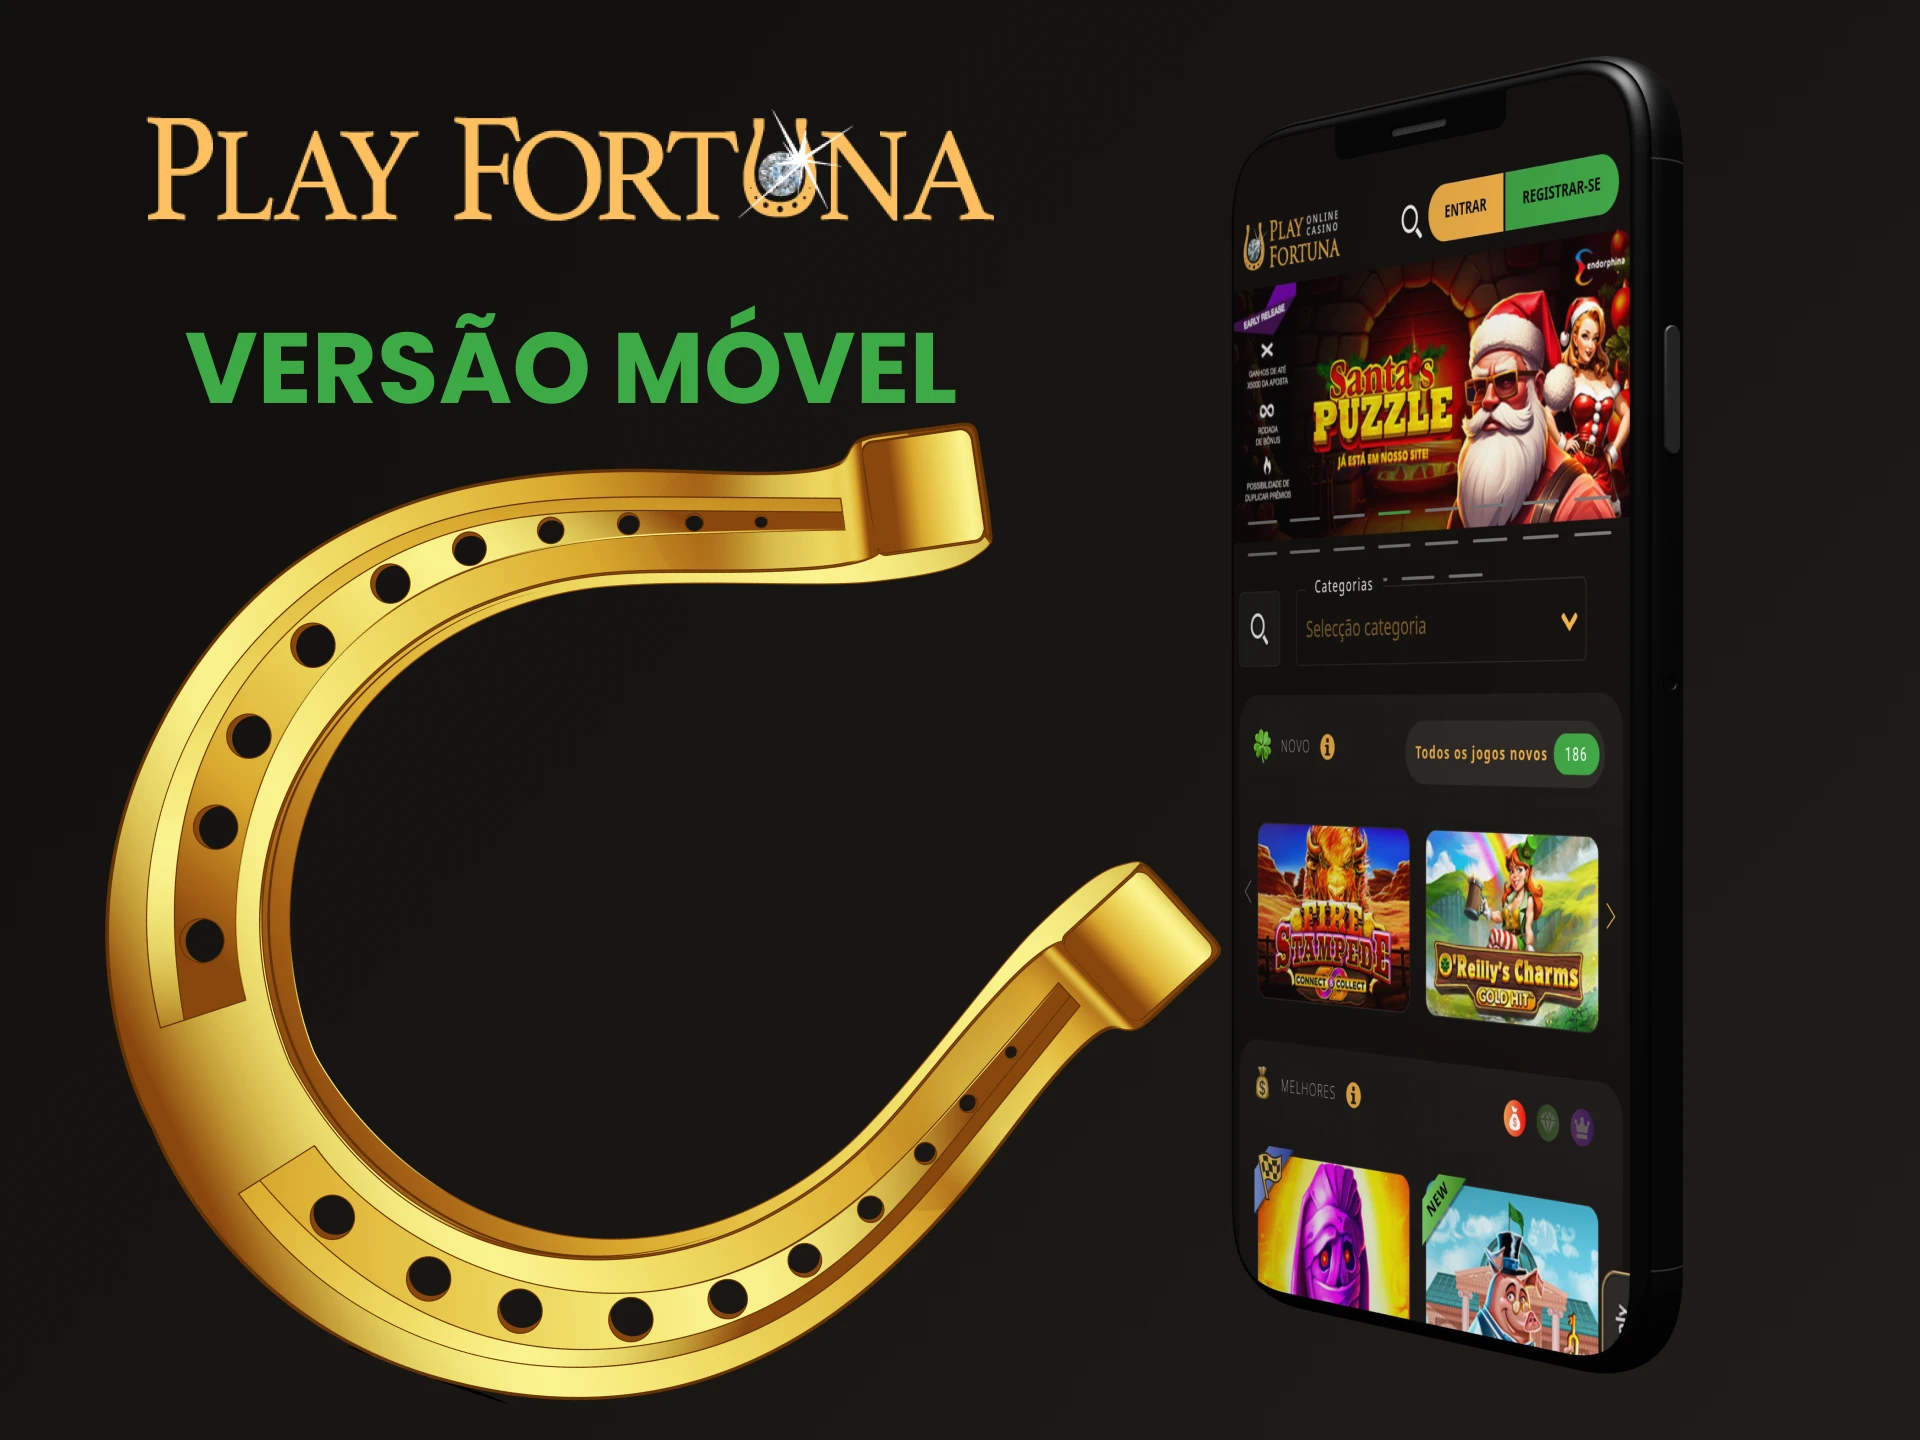 Visite a página móvel do site Play Fortuna.